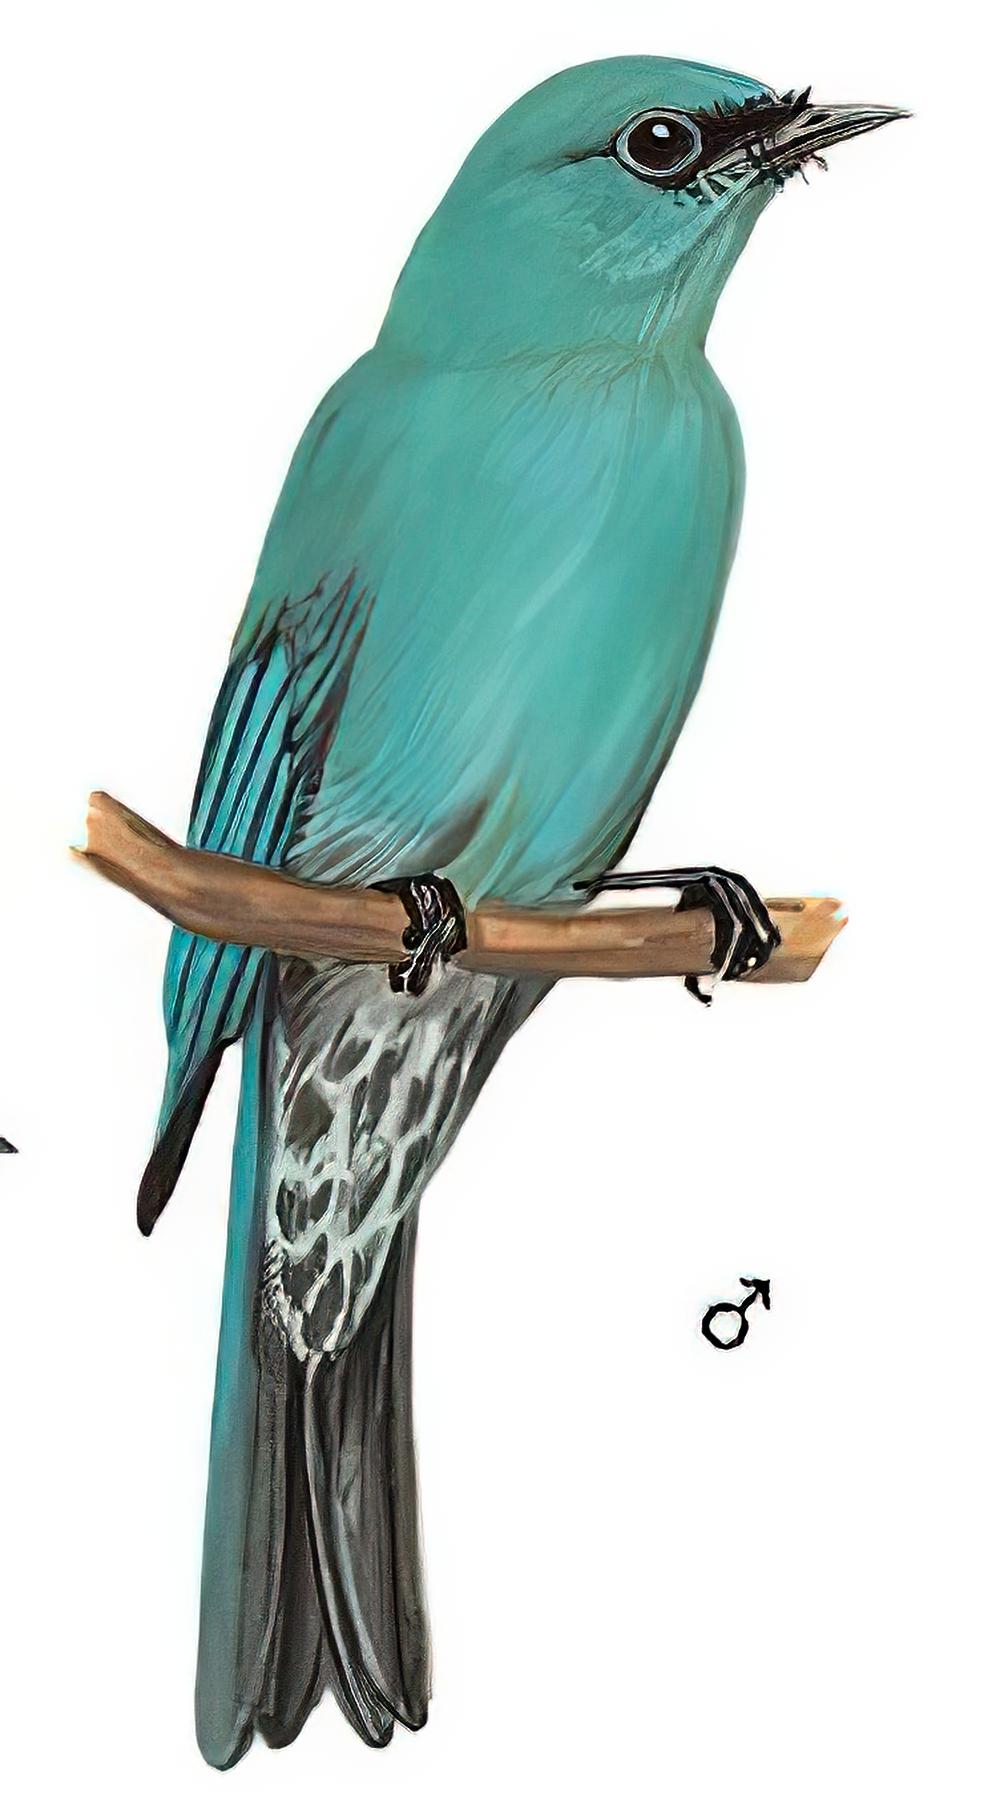 铜蓝鹟 / Verditer Flycatcher / Eumyias thalassinus